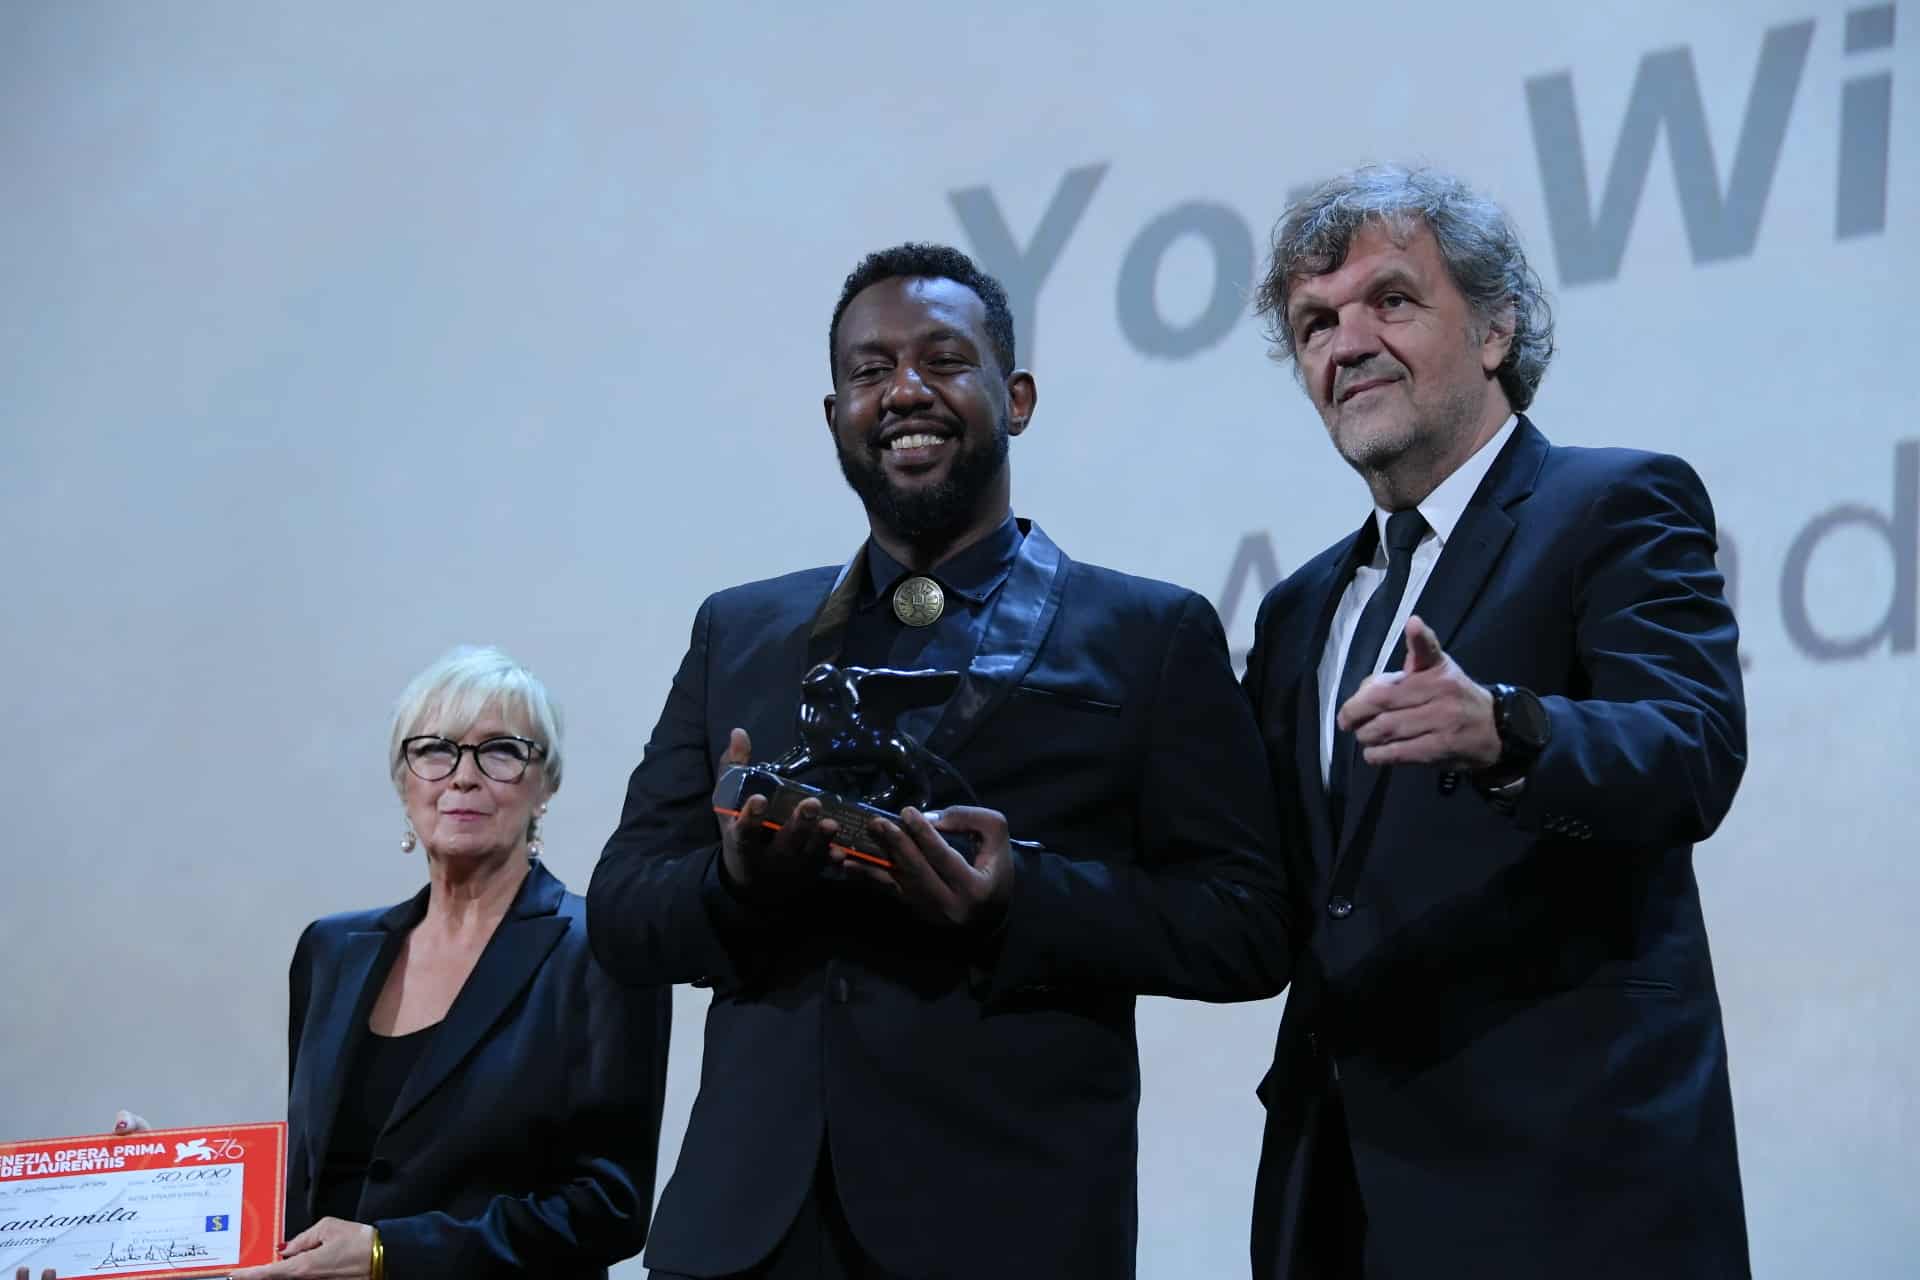 Emir Kusturica, miembro del jurado, durante la entrega de premios ceremonia de la 76ª edición del Festival Internacional de Cine de Venecia